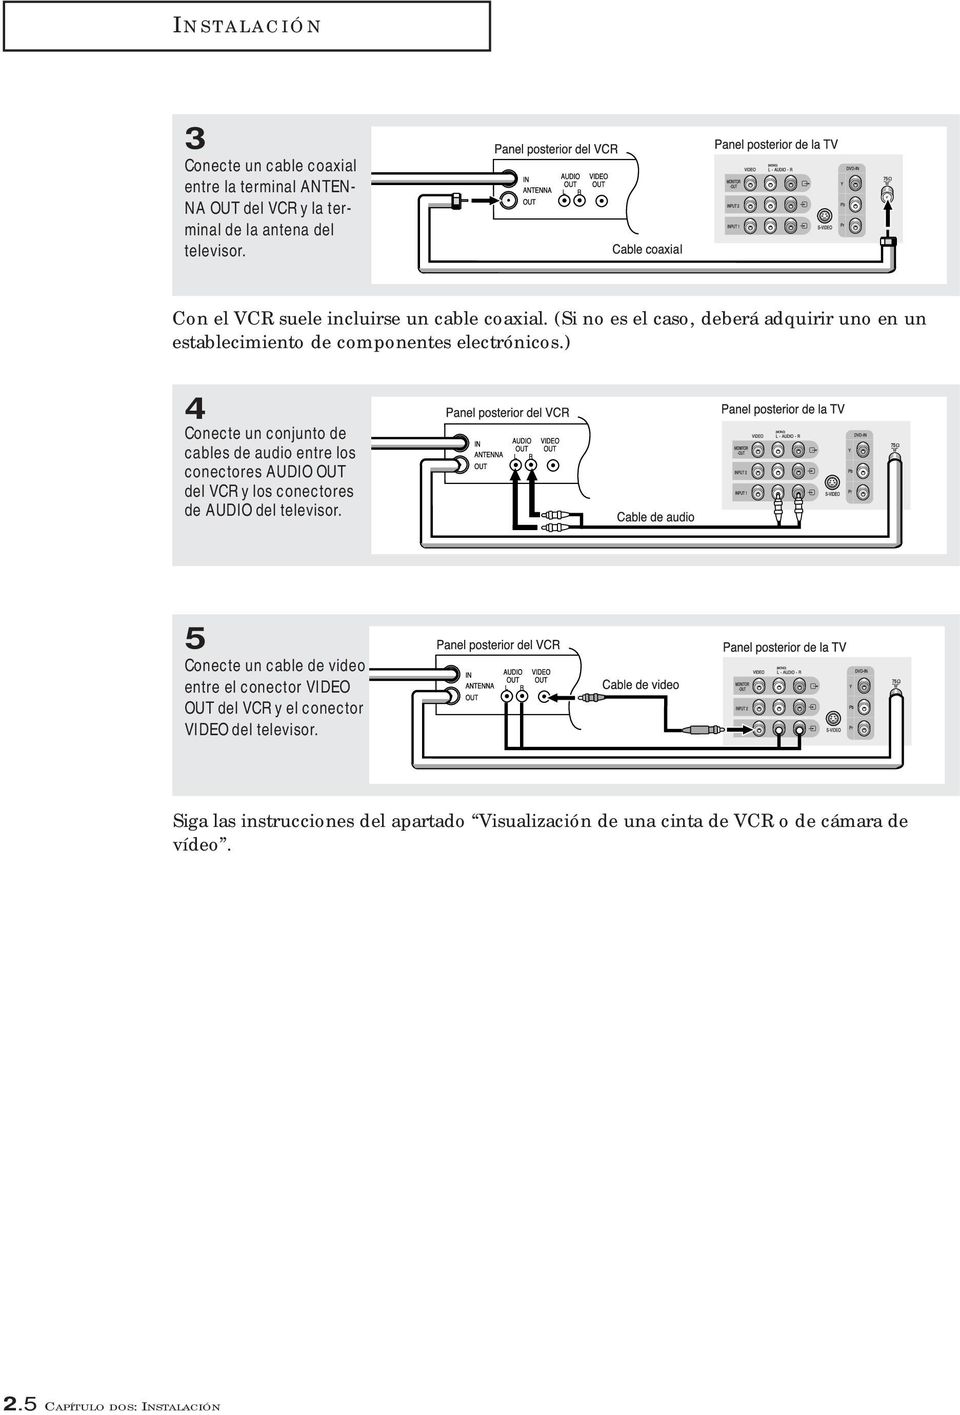 ) 4 Conecte un conjunto de cables de audio entre los conectores AUDIO OUT del VCR y los conectores de AUDIO del televisor.